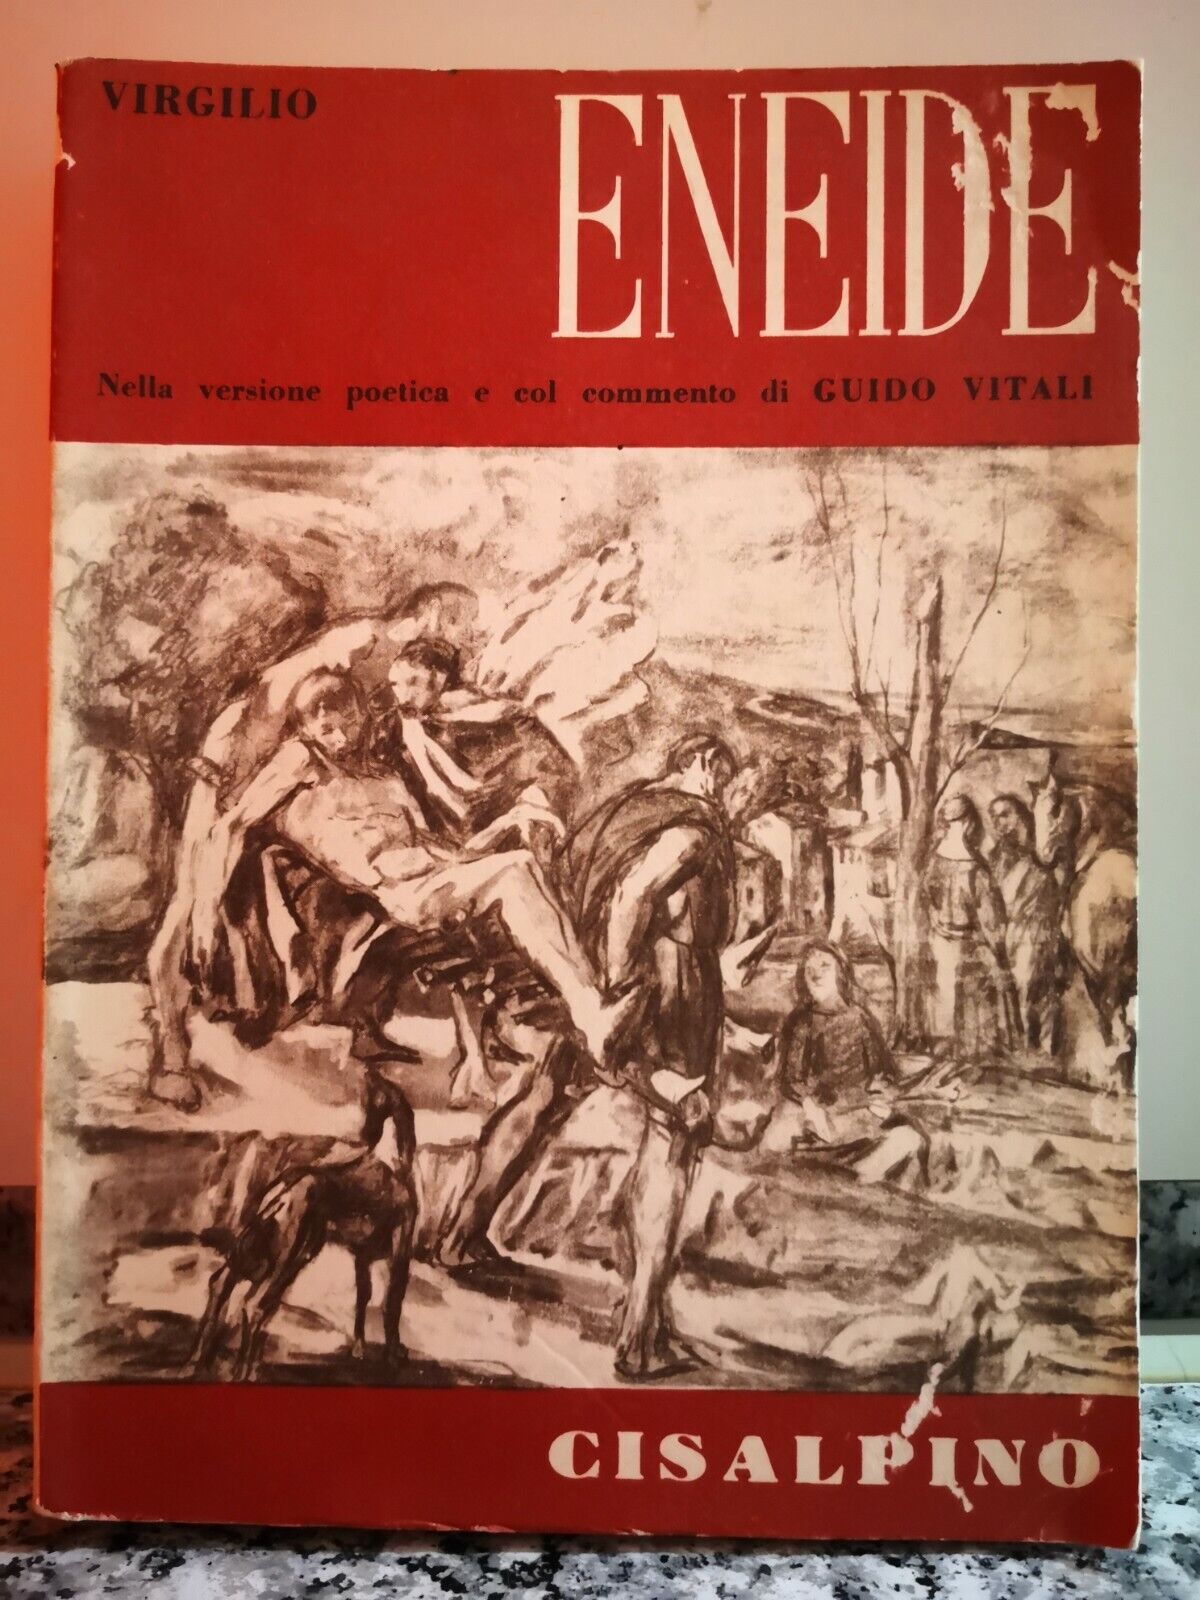   Eneide  di Virgilio,  1967,  Cisalpino-F